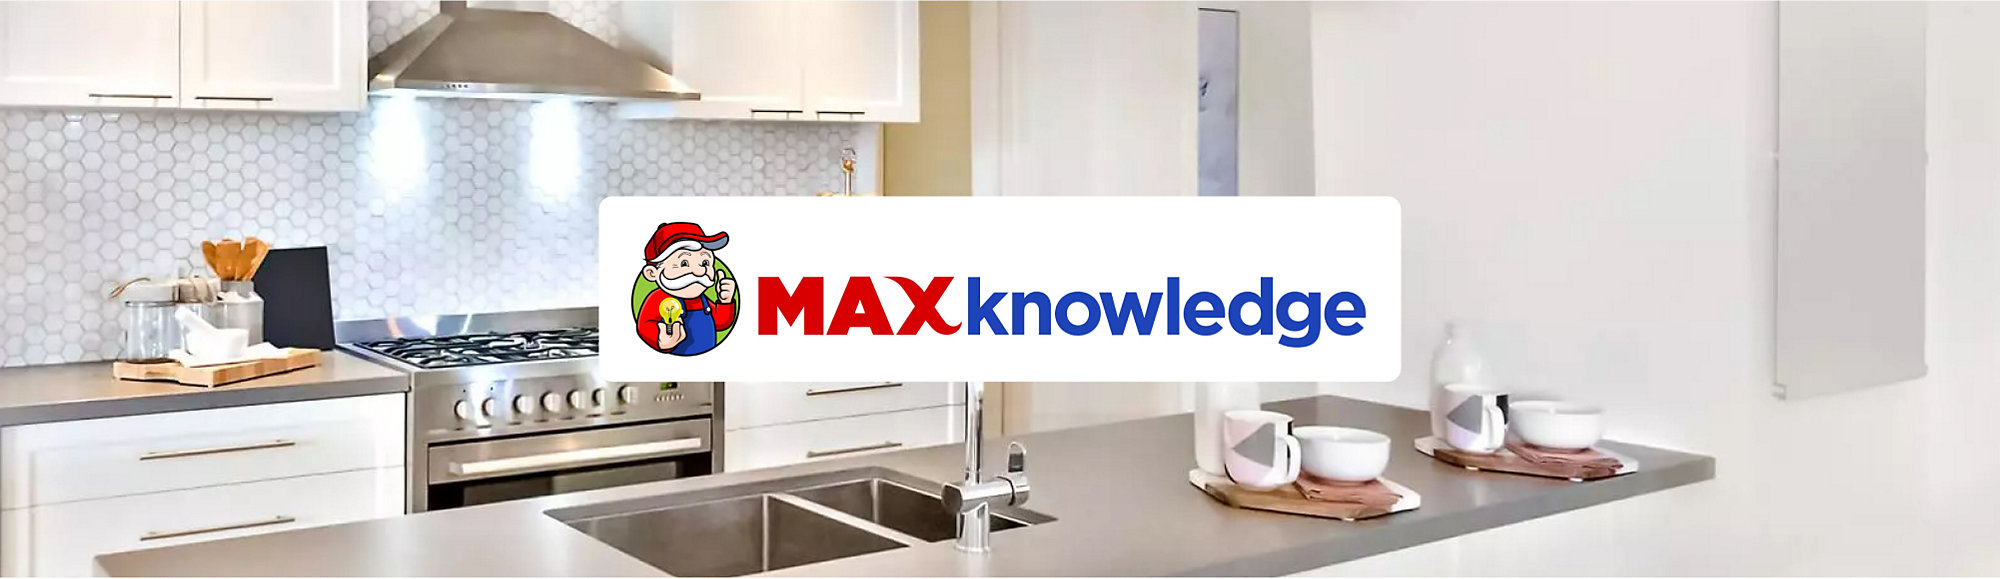 MAXknowledge_Logo